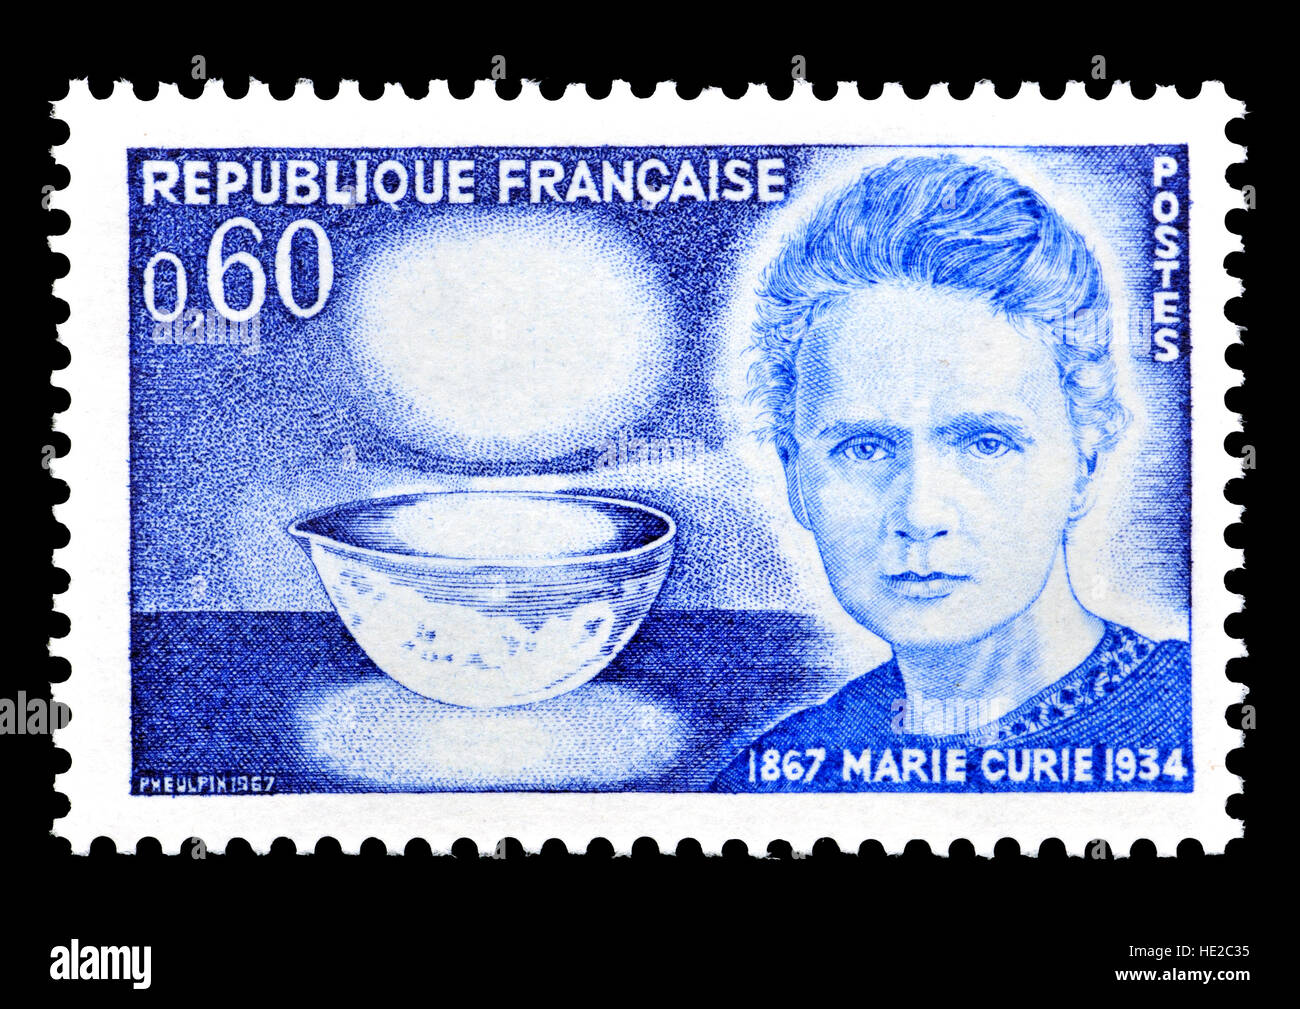 Französische Briefmarke (1964): Marie Curie (Maria Salomea Sklodowska geboren: 1887-1934) polnischen und eingebürgert Französisch Physiker und Chemiker. Durchgeführt... Stockfoto